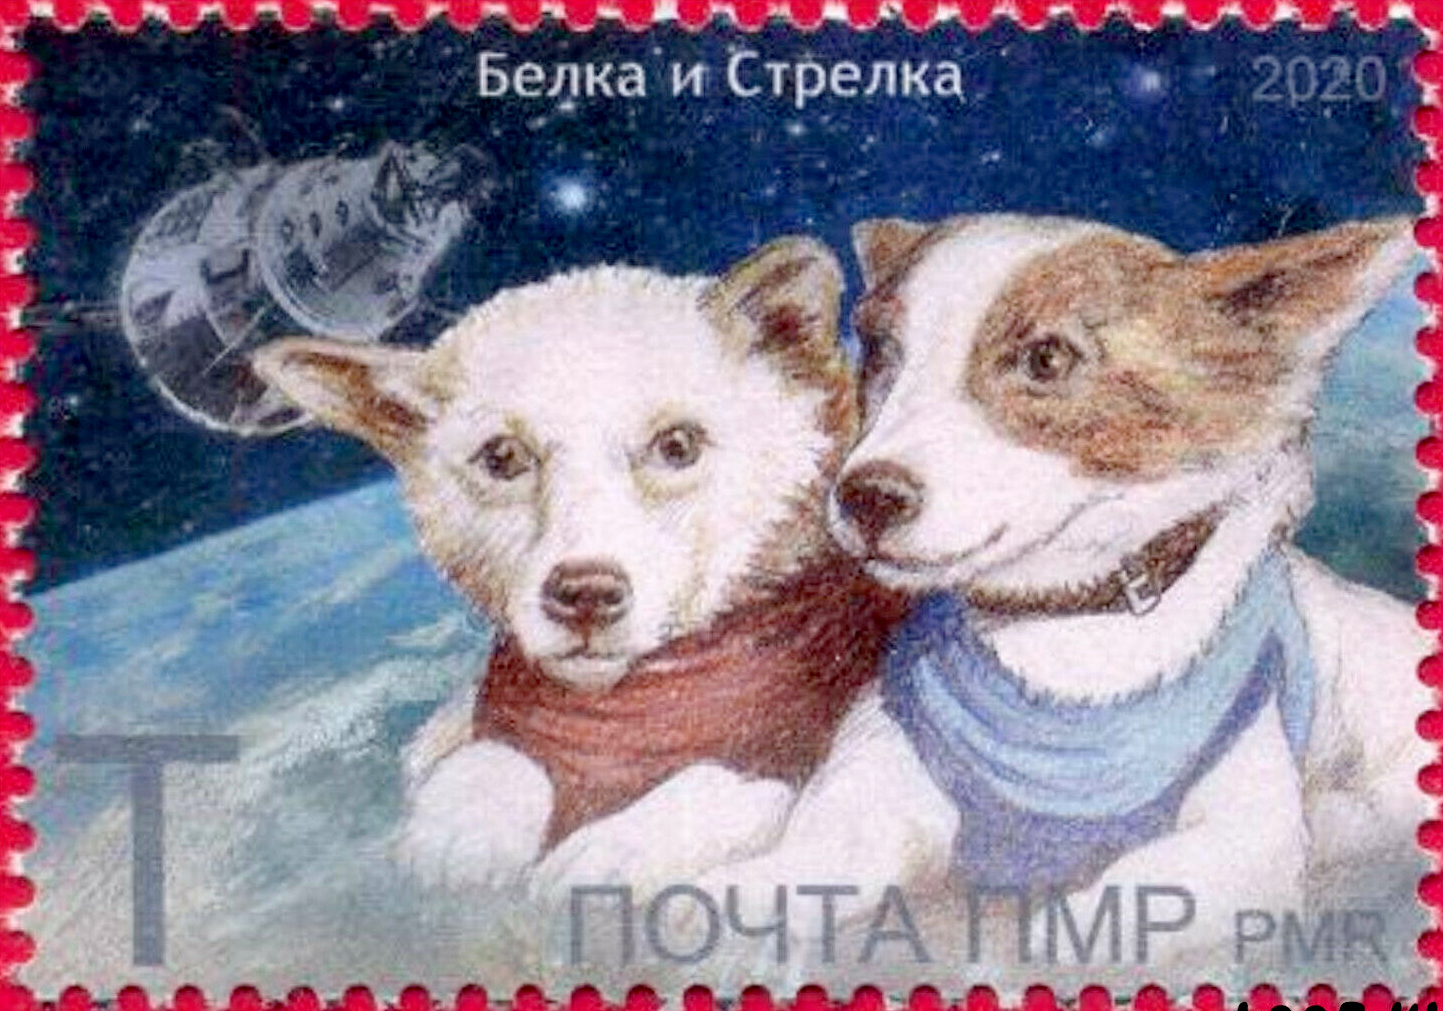 Belka és Sztrelka egy orosz bélyegen (forrás: Wikipedia)